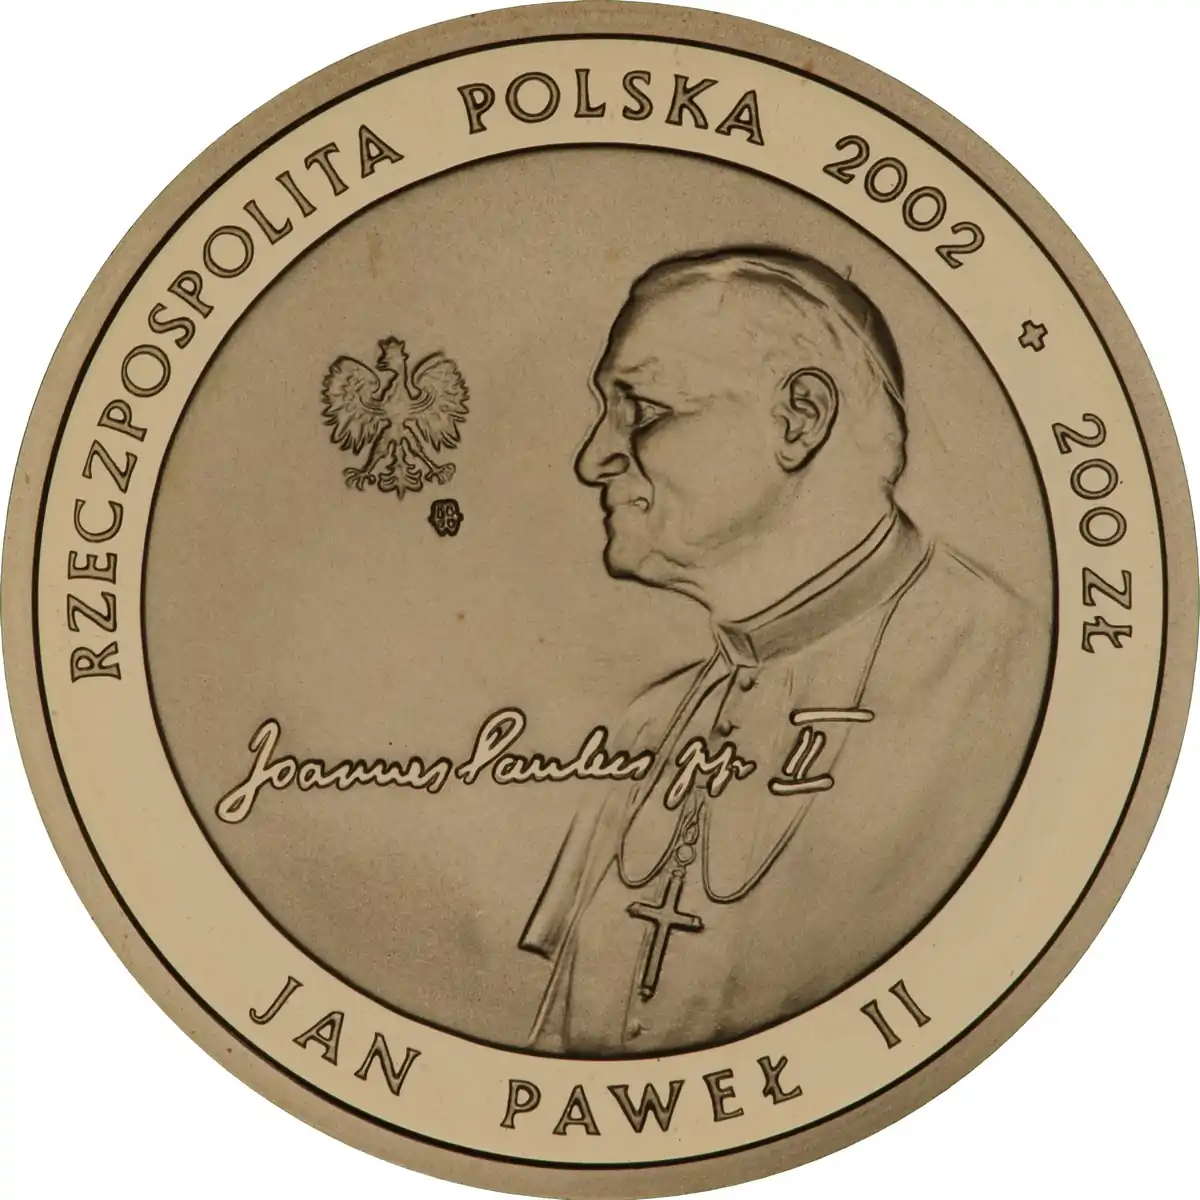 200 zł Jan Paweł II - Pontifex Maximus 2002 - złota moneta